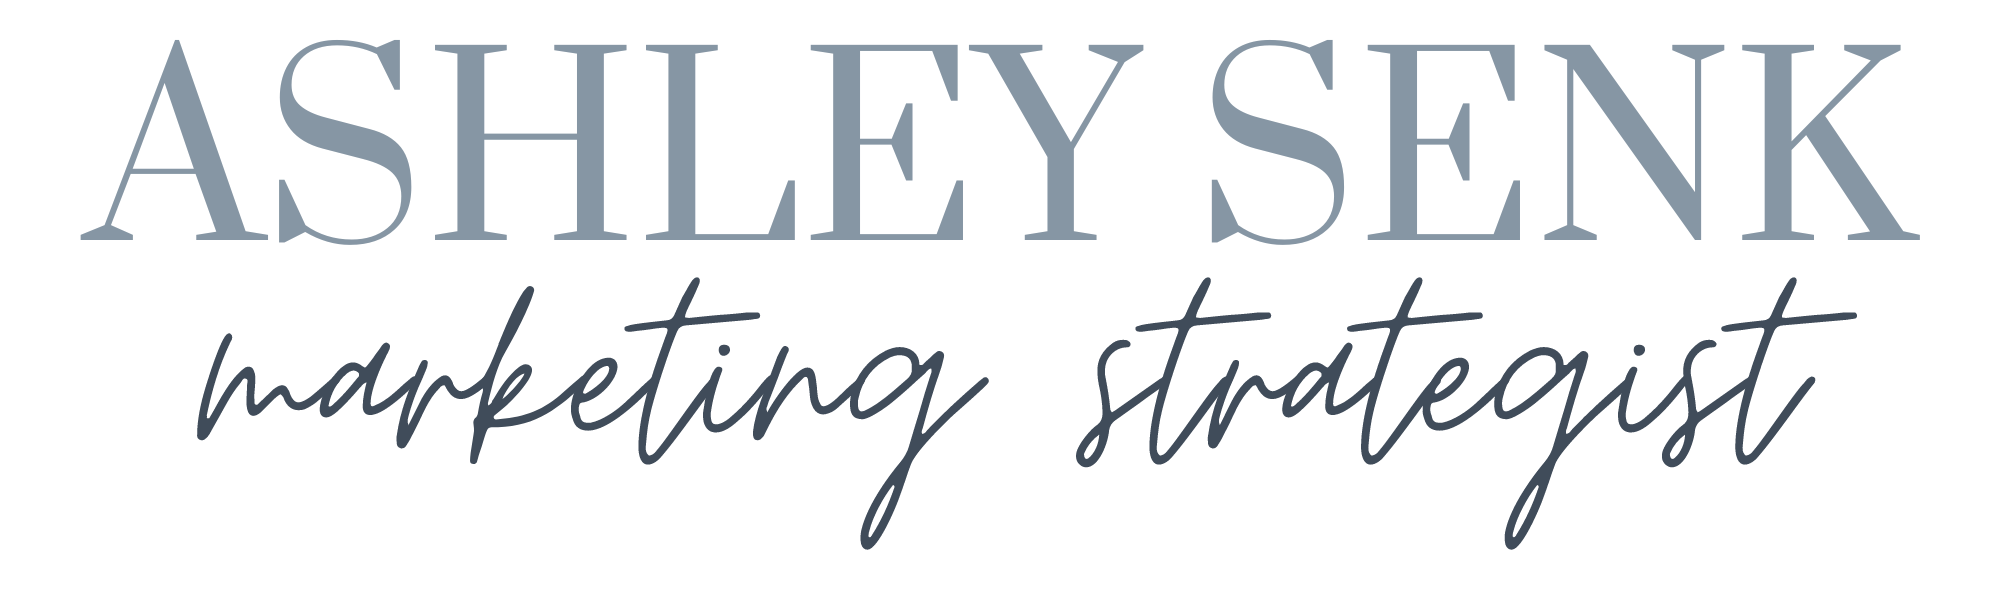 Ashley Senk Logo